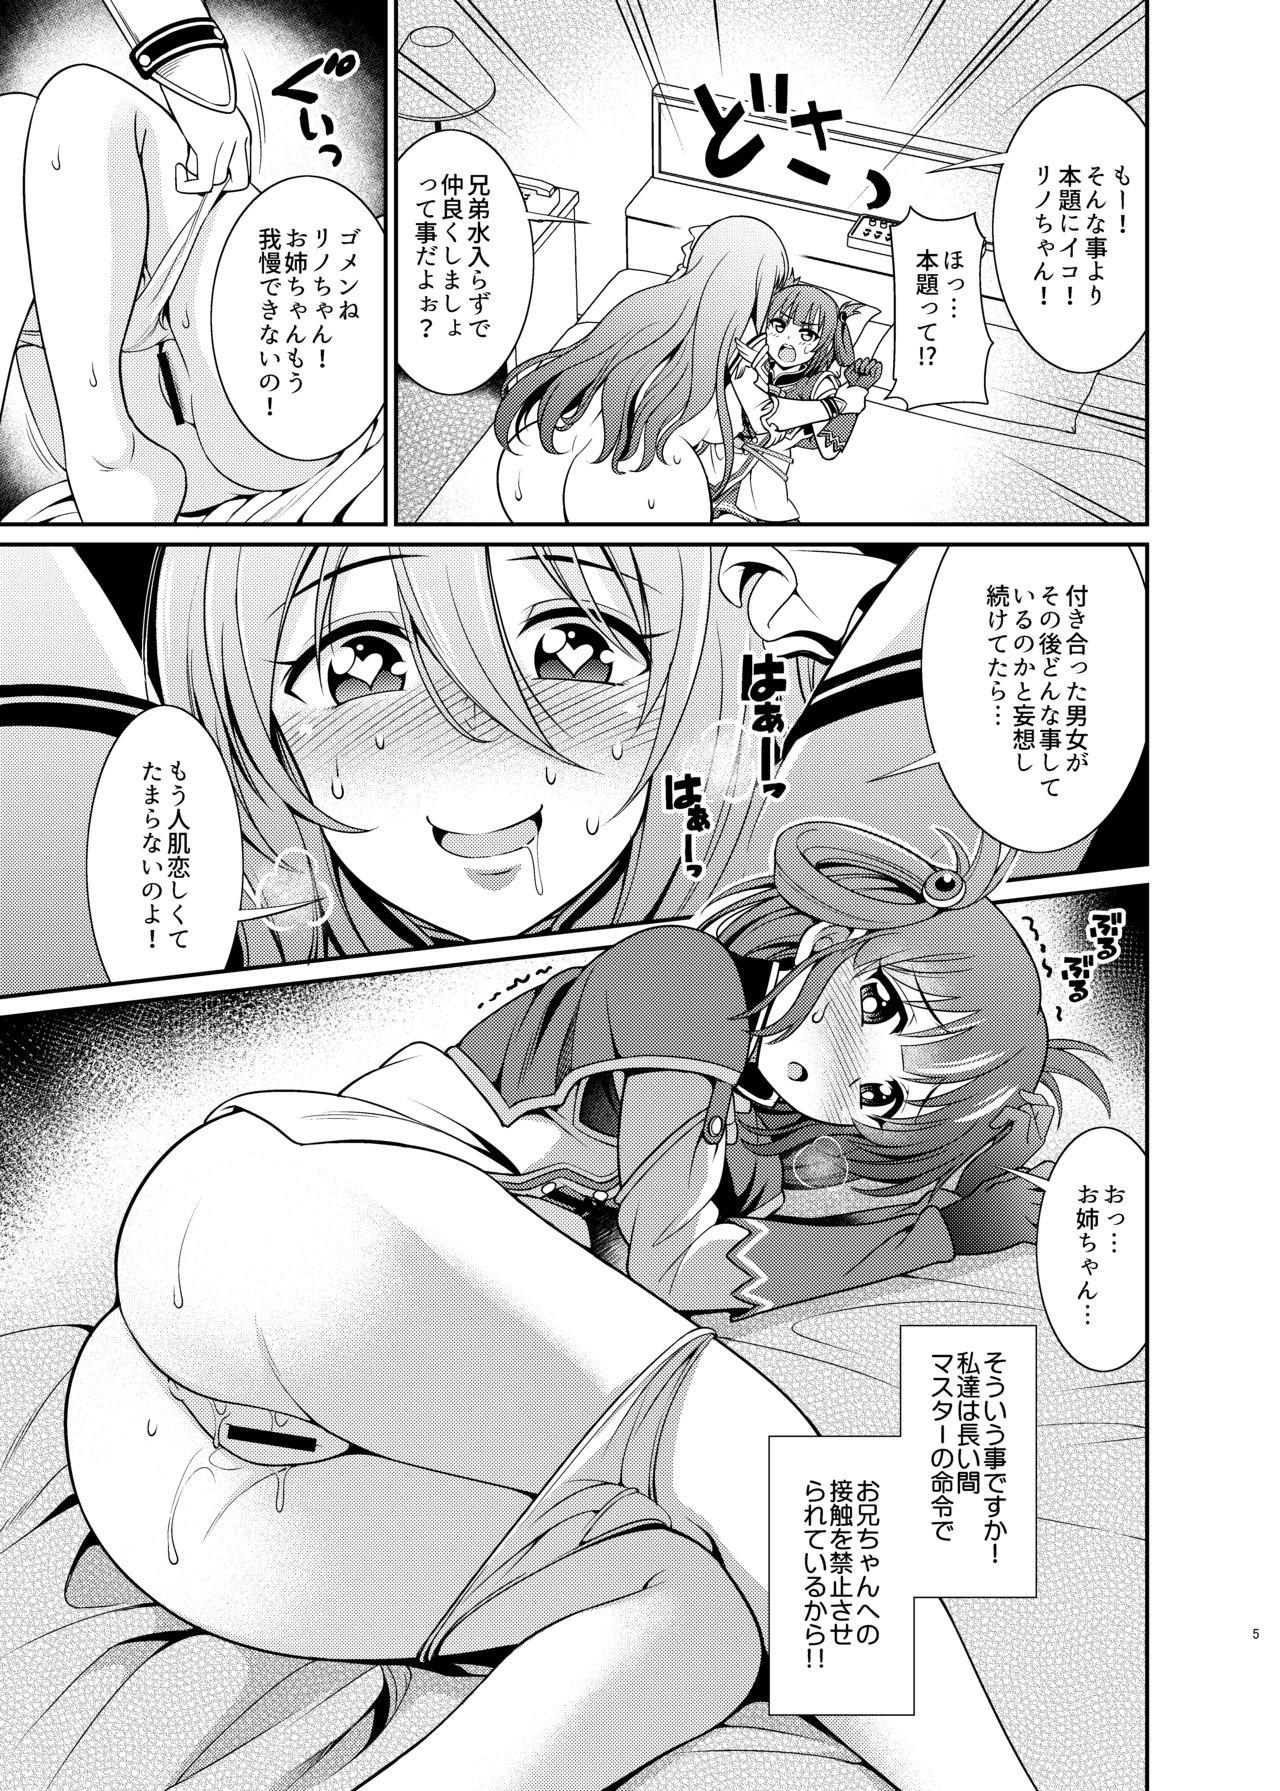 Time Kinyoku Seikatsu nante Kiwameru kara... Ochinchin ga Haechaun desu yo! - Princess connect Nipple - Page 5